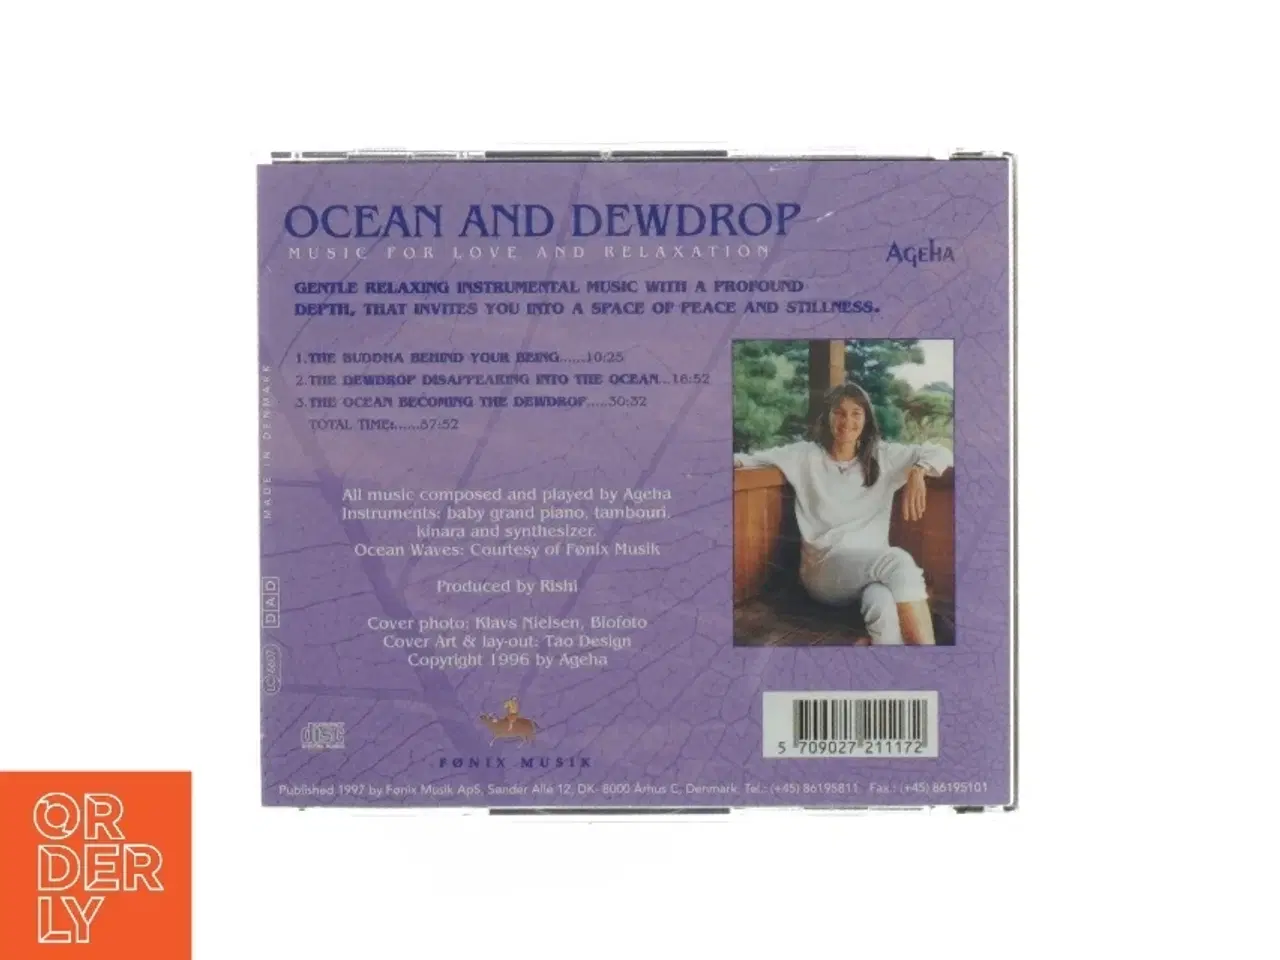 Billede 2 - Ocean and dewdrop cd